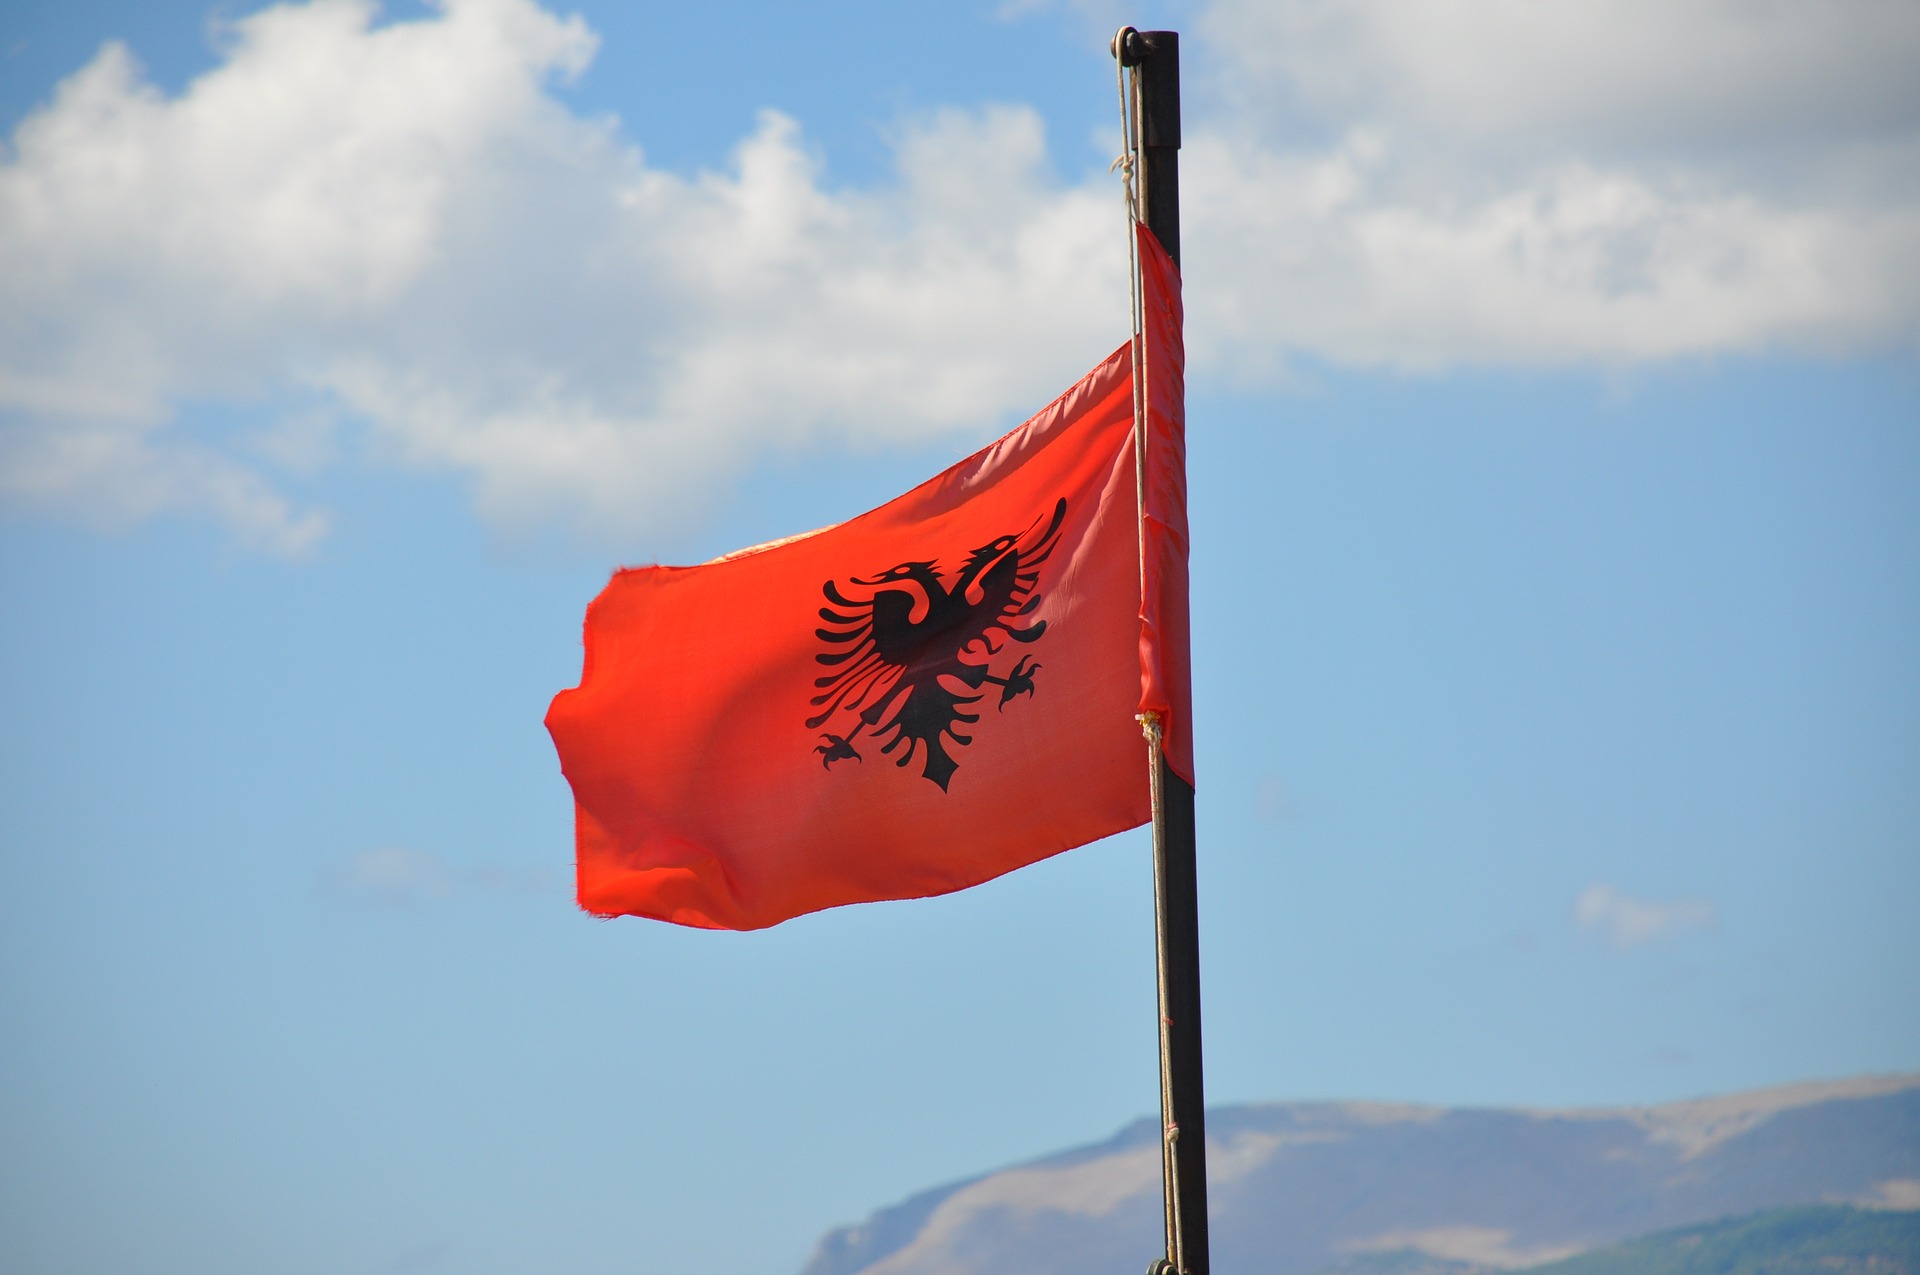 De vlag van Albanië: symboliek en geschiedenis